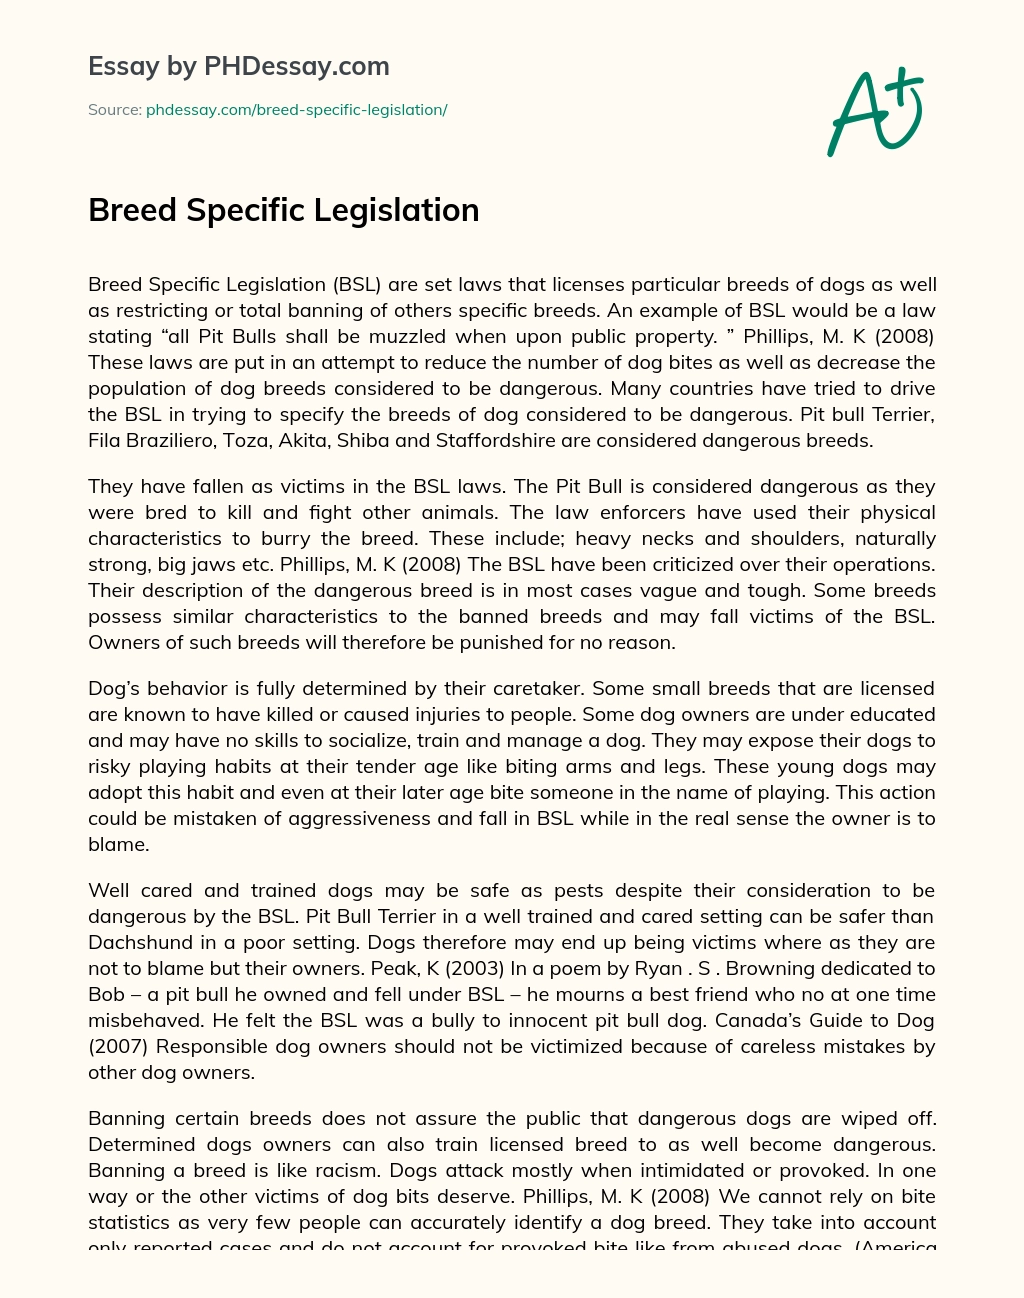 Breed Specific Legislation essay